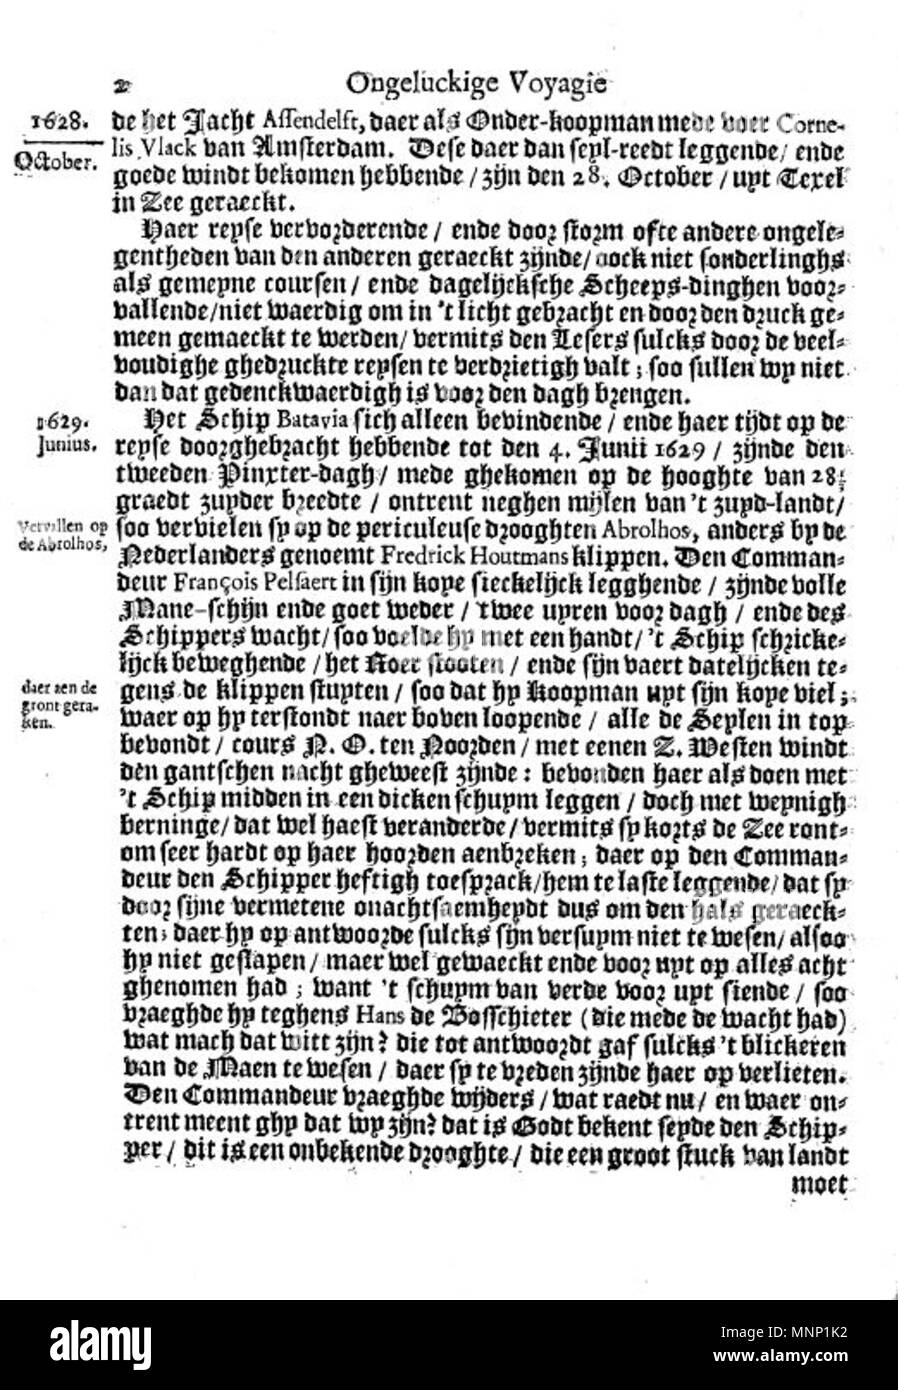 . Questa è una pagina dal 1647 Libro olandese Ongeluckige voyagie, non va schip Batavia ("sfortunato viaggio della nave Batavia'). 1647. Il lavoro è nominalmente di Jan Jansz, ma è in realtà una terza persona tranposition della gazzetta di Francisco Pelsaert. 942 Ongeluckige voyagie vant schip Batavia (pagina 2) Foto Stock